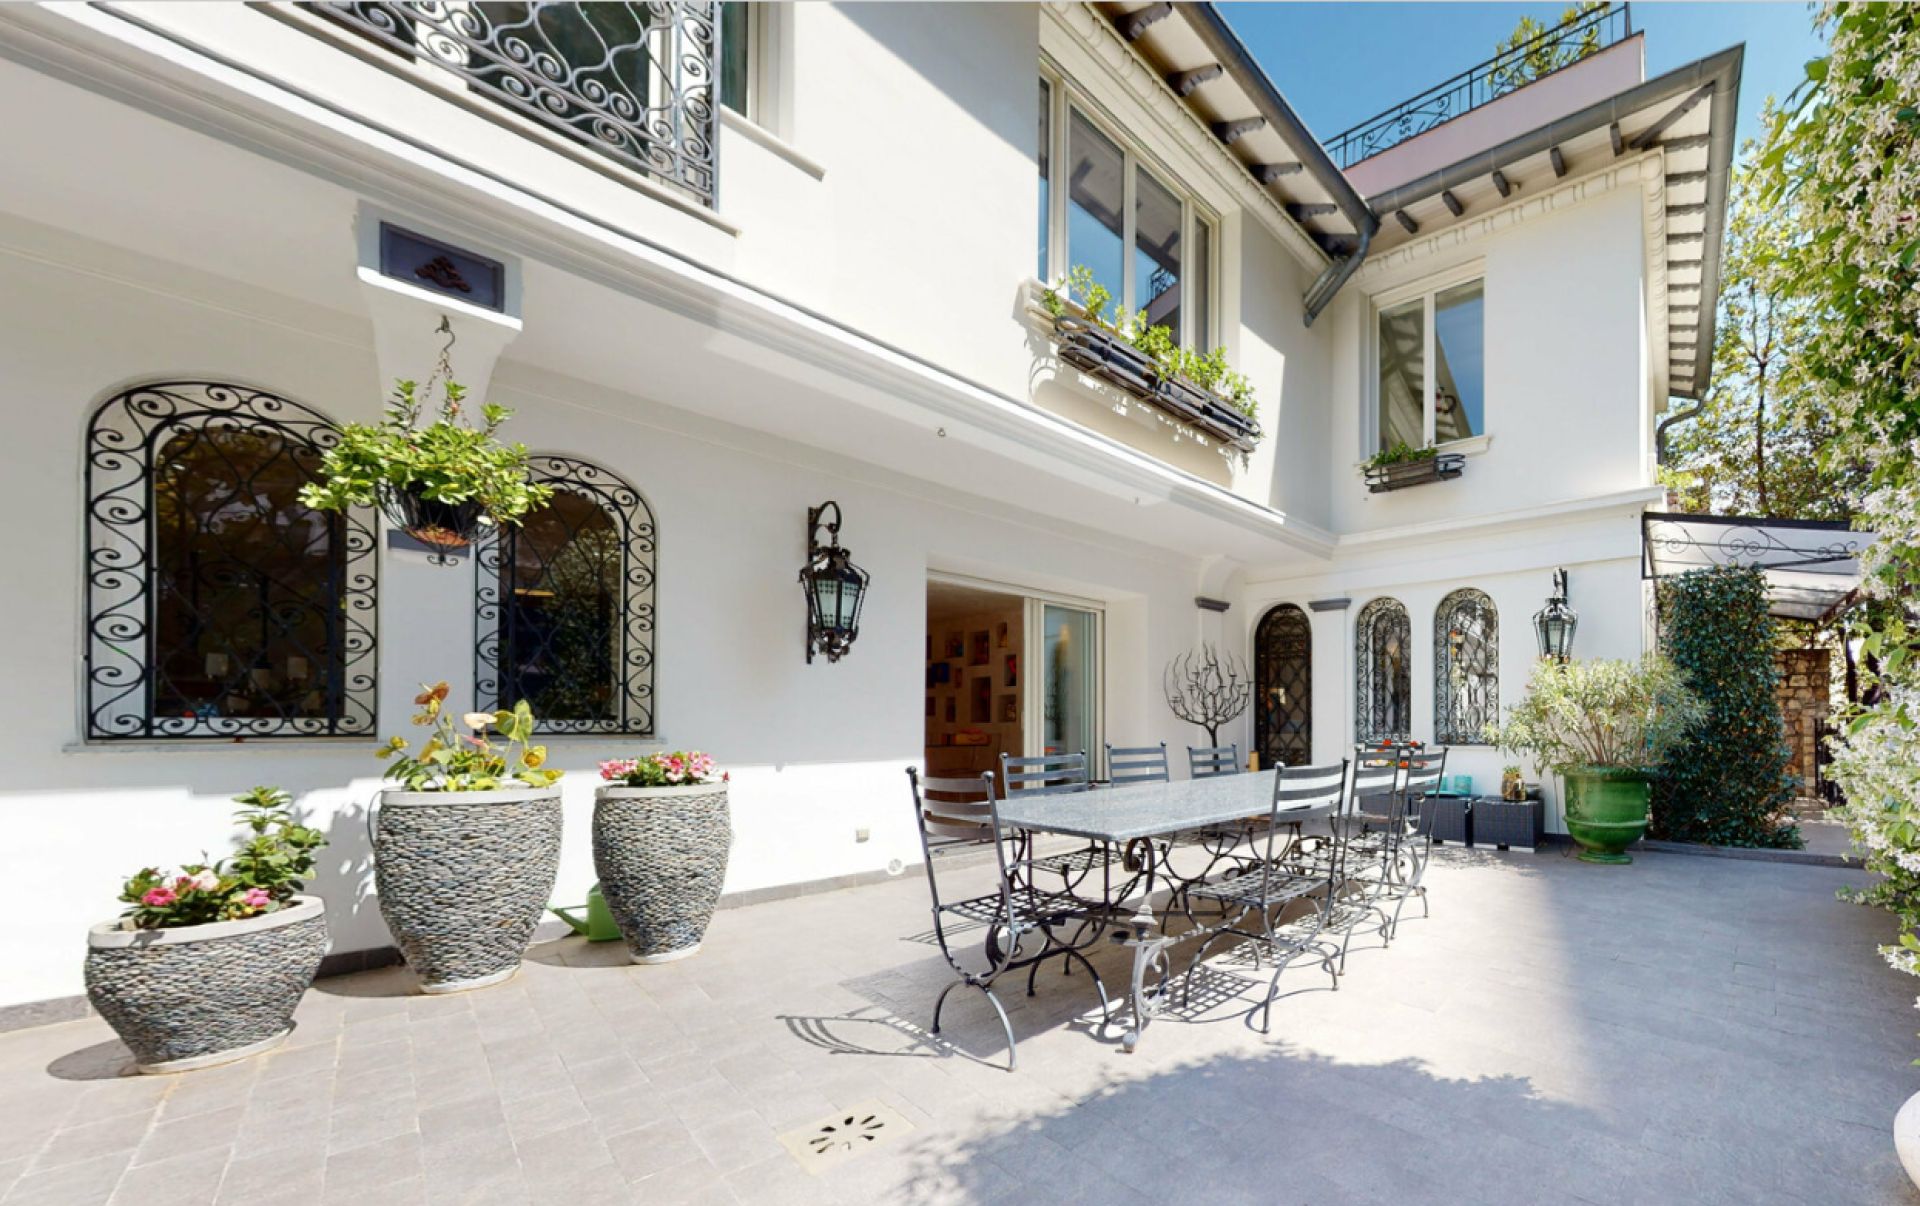 Dotta Appartement de 6+ pieces a vendre - VILLA ALBAYA - Saint-Roman - Monaco - imgfe